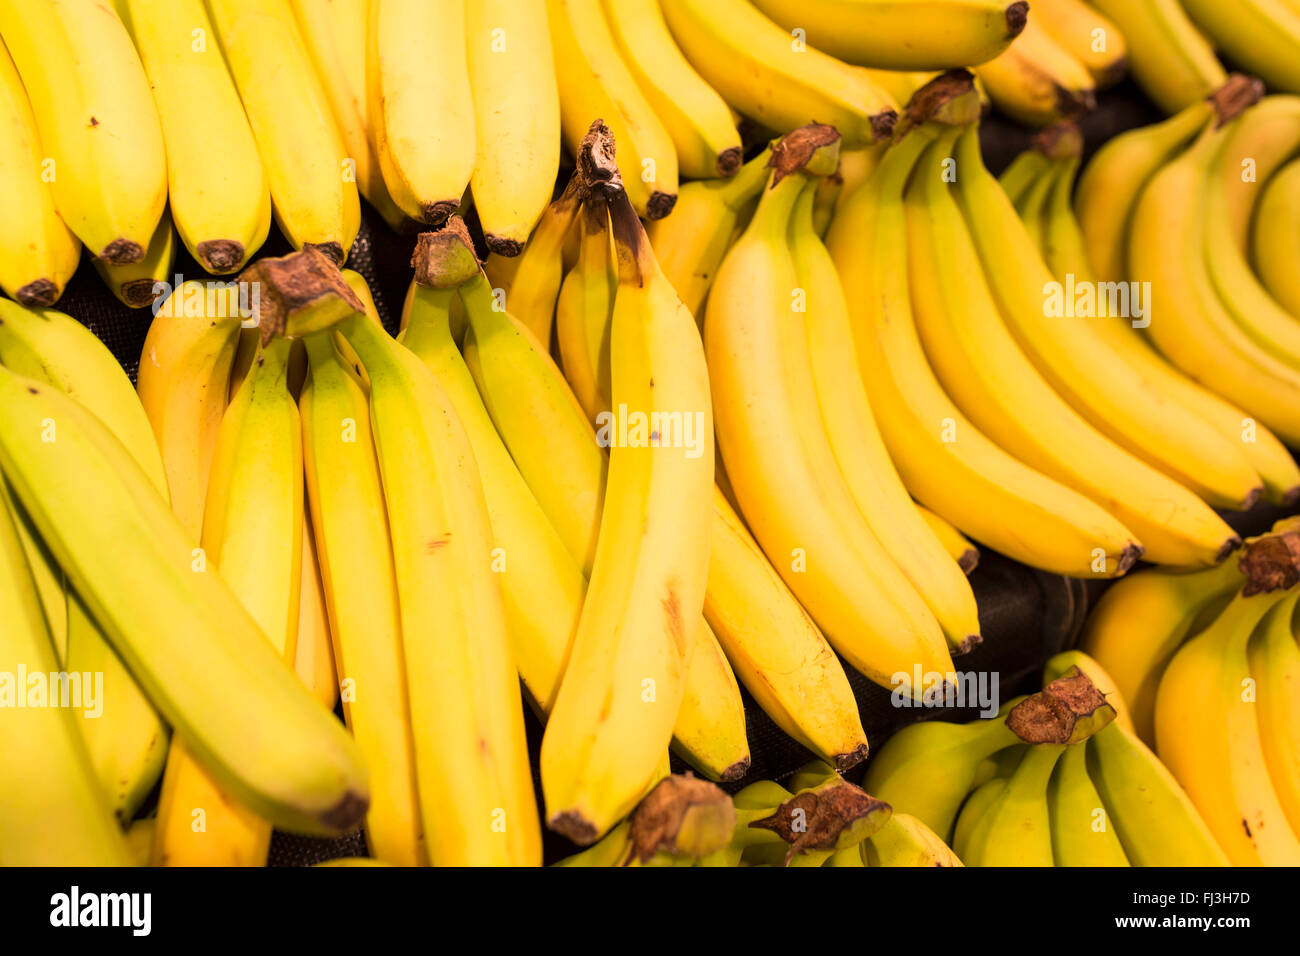 Bananenstauden in einem Supermarkt Stockfoto